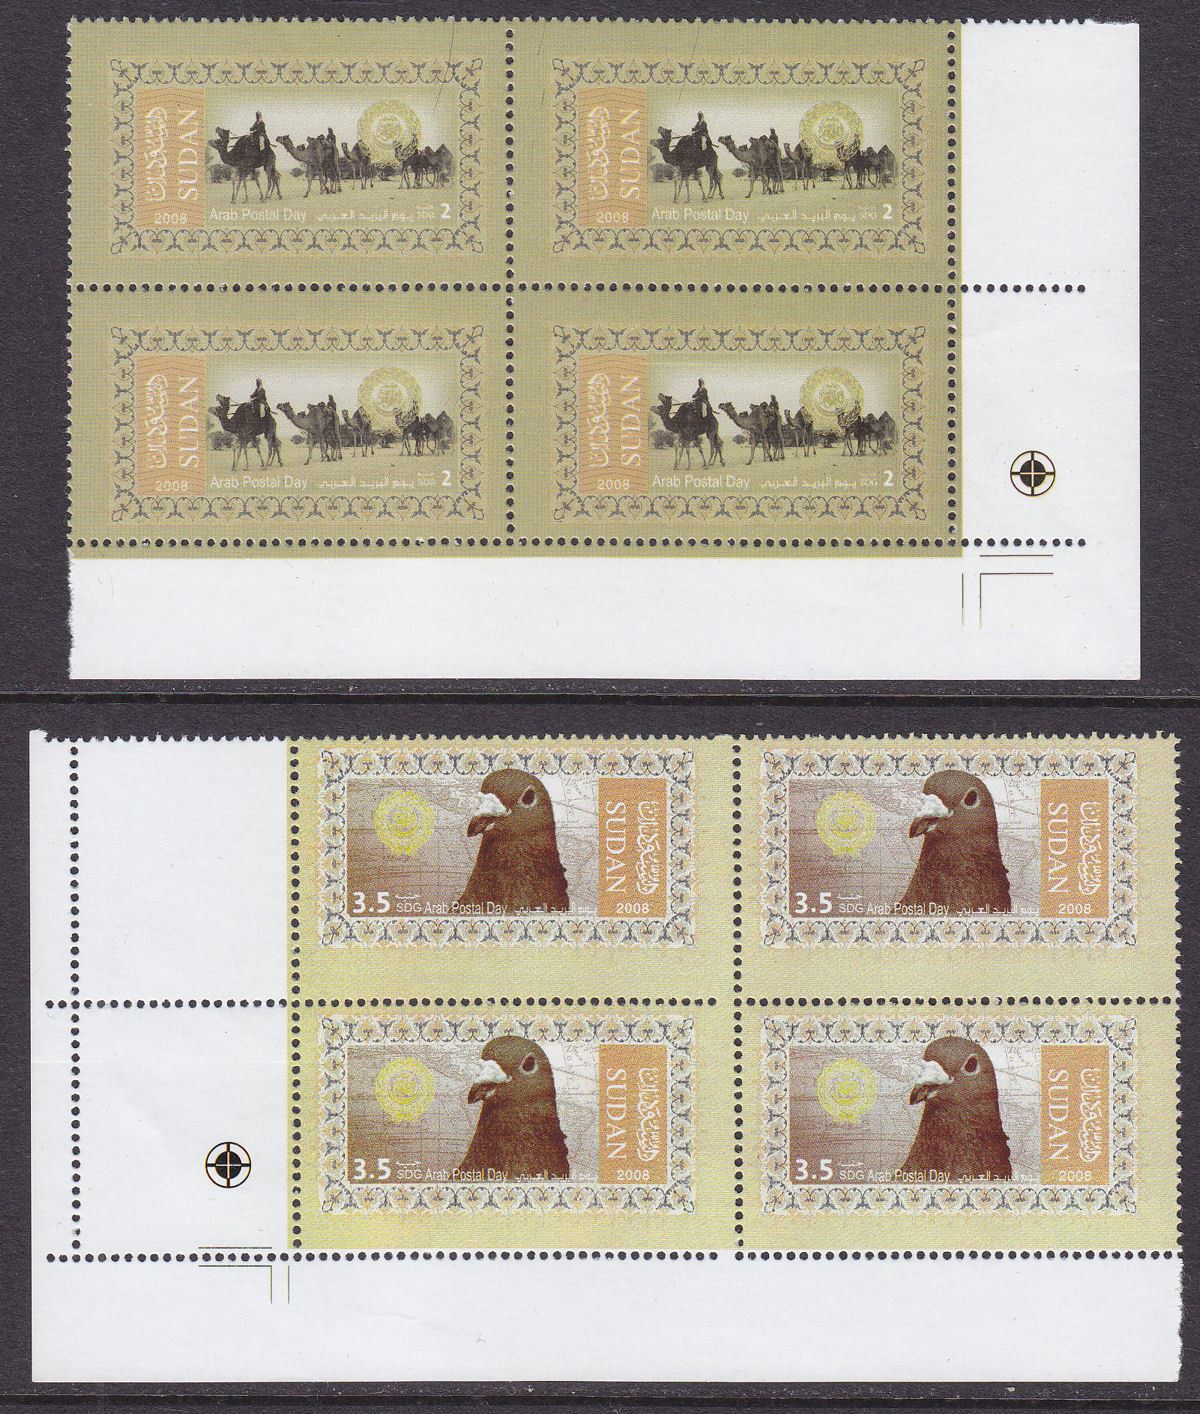 Sudan 2008 Arab Post Day 2sdg, 3.5sdg Blocks of 4 UM Mint SG692-693 cat £55